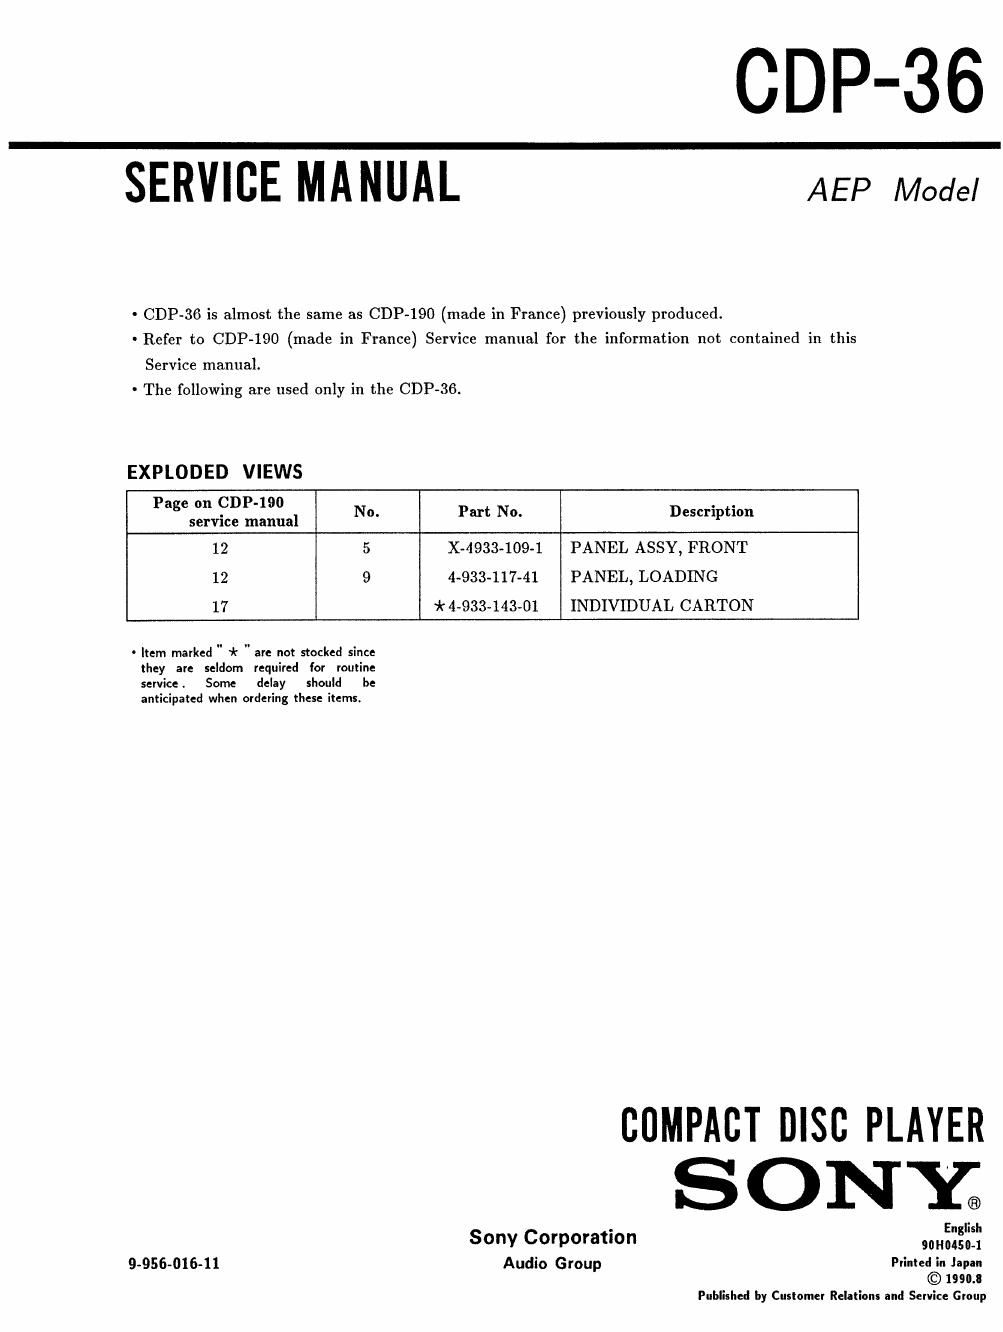 sony cdp 36 service manual